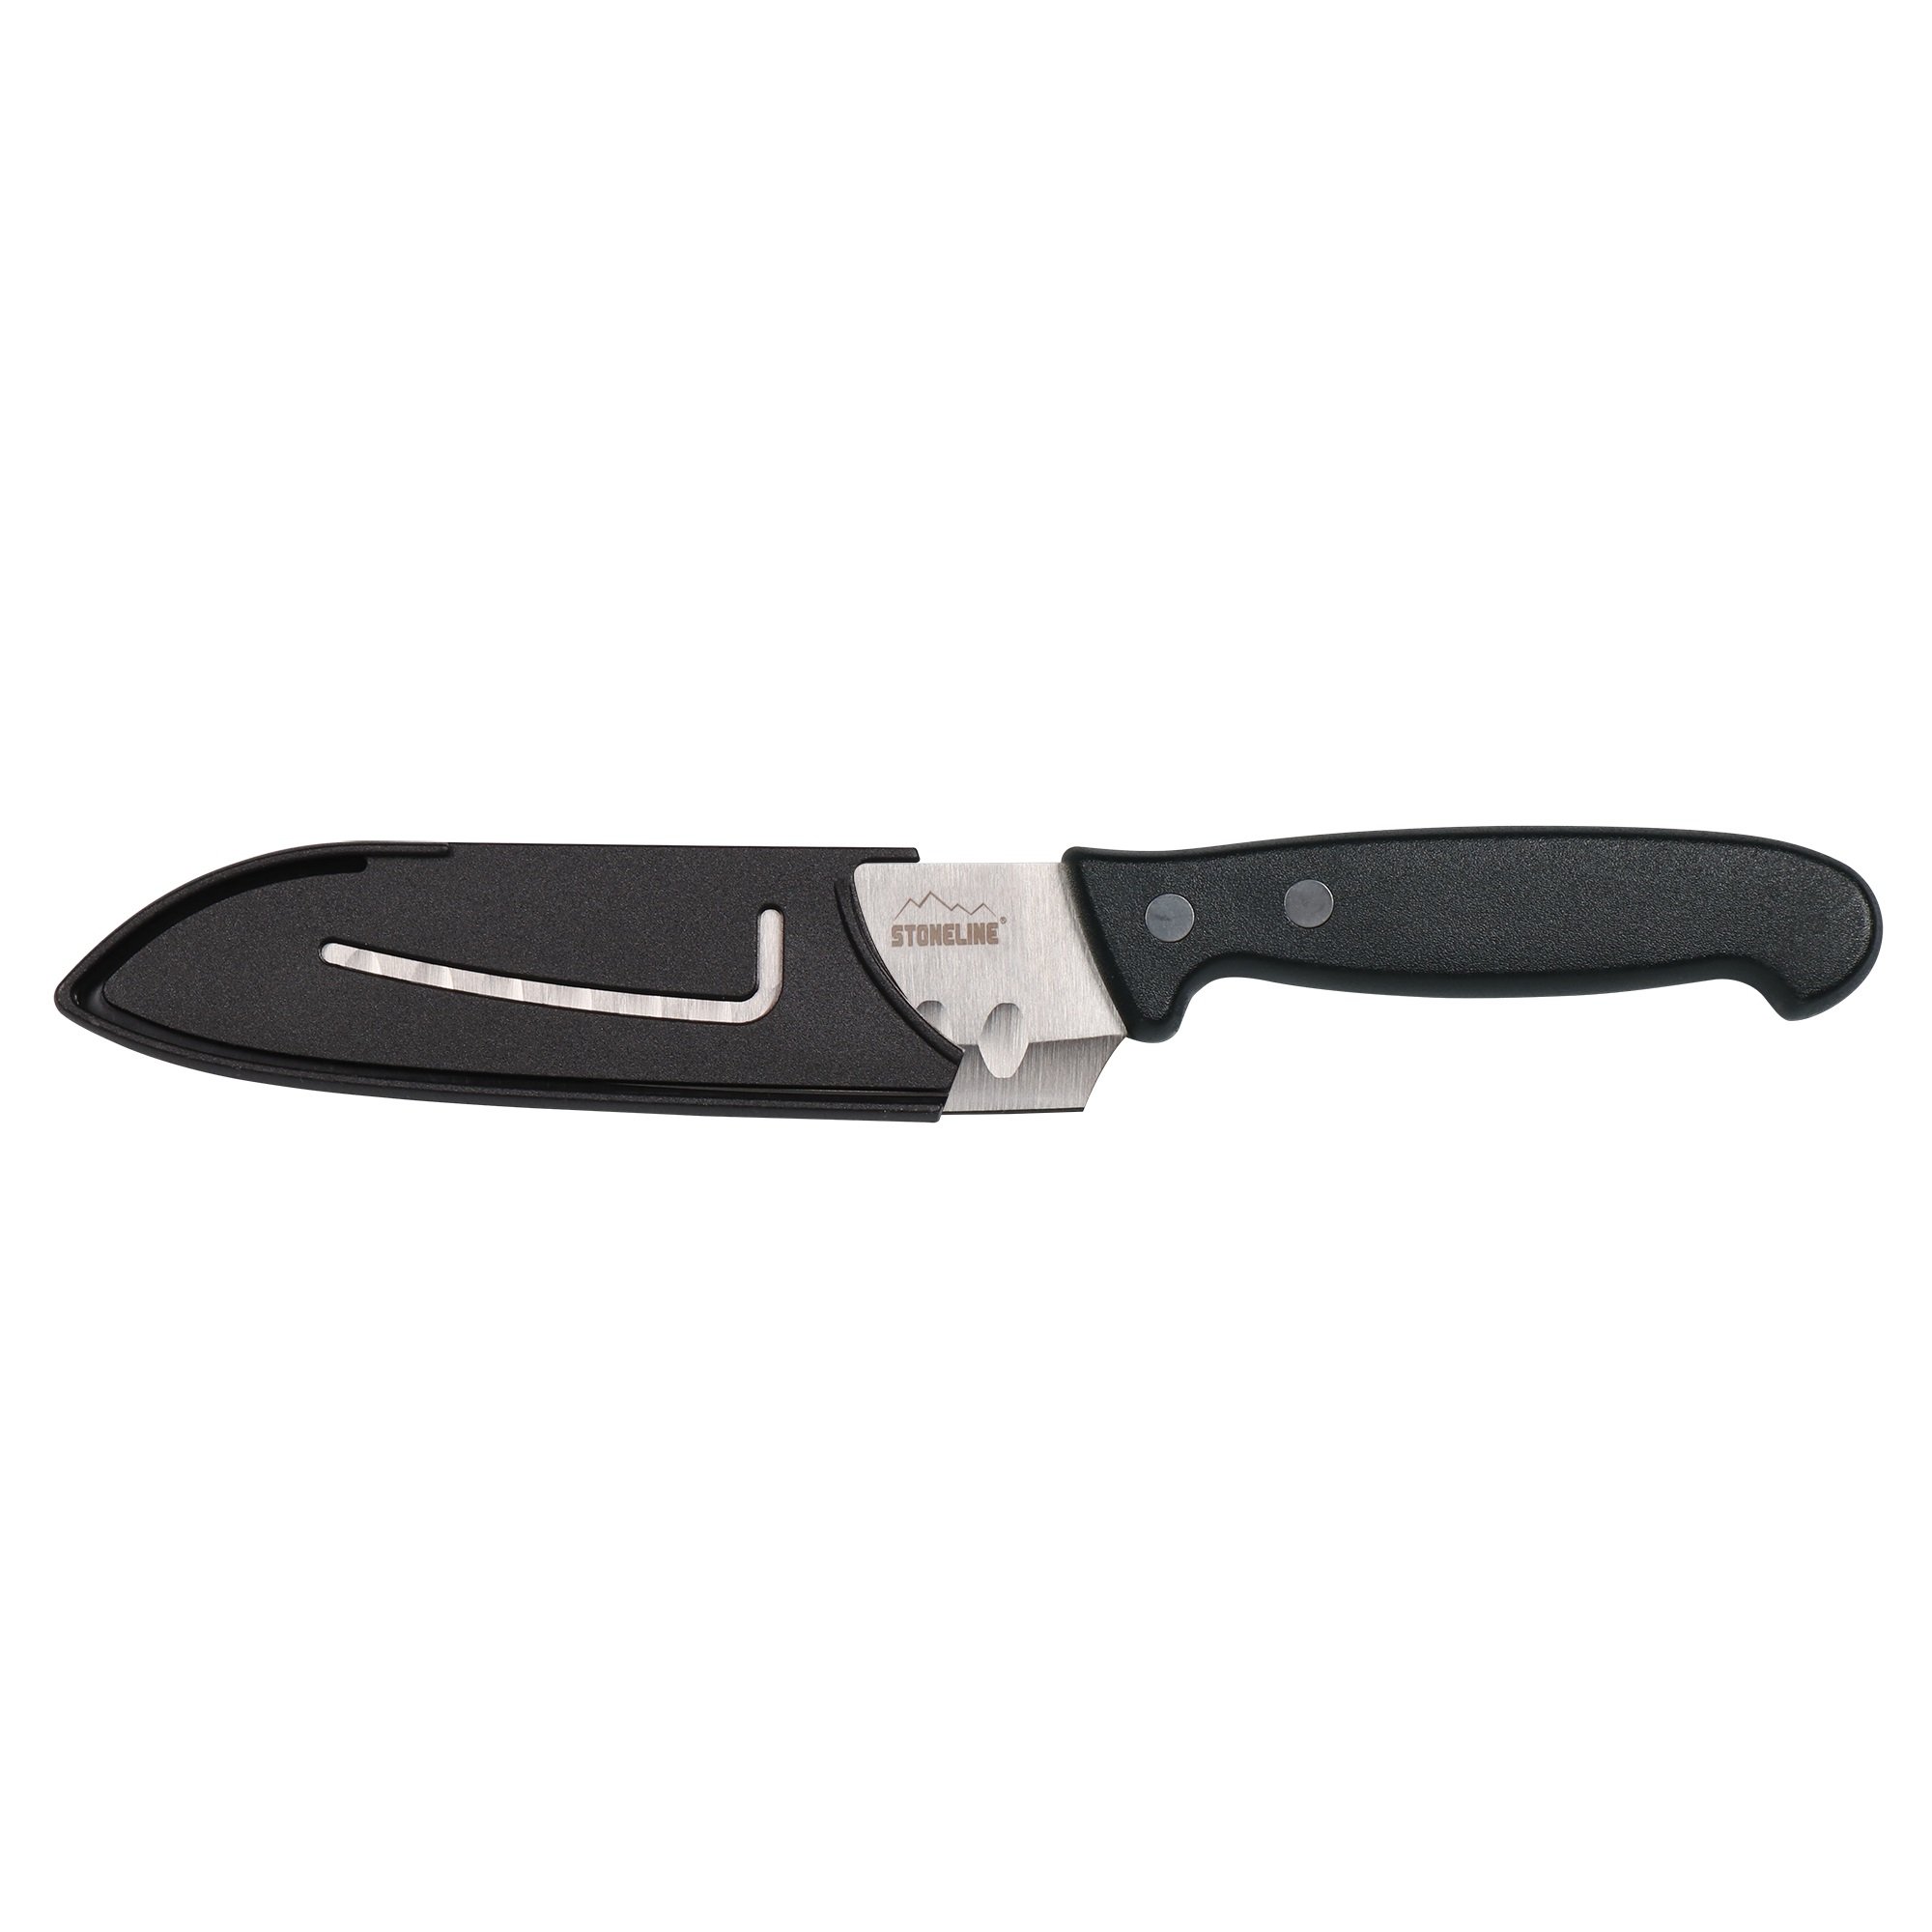 STONELINE® couteau Santoku 22,6 cm, avec protège-lame